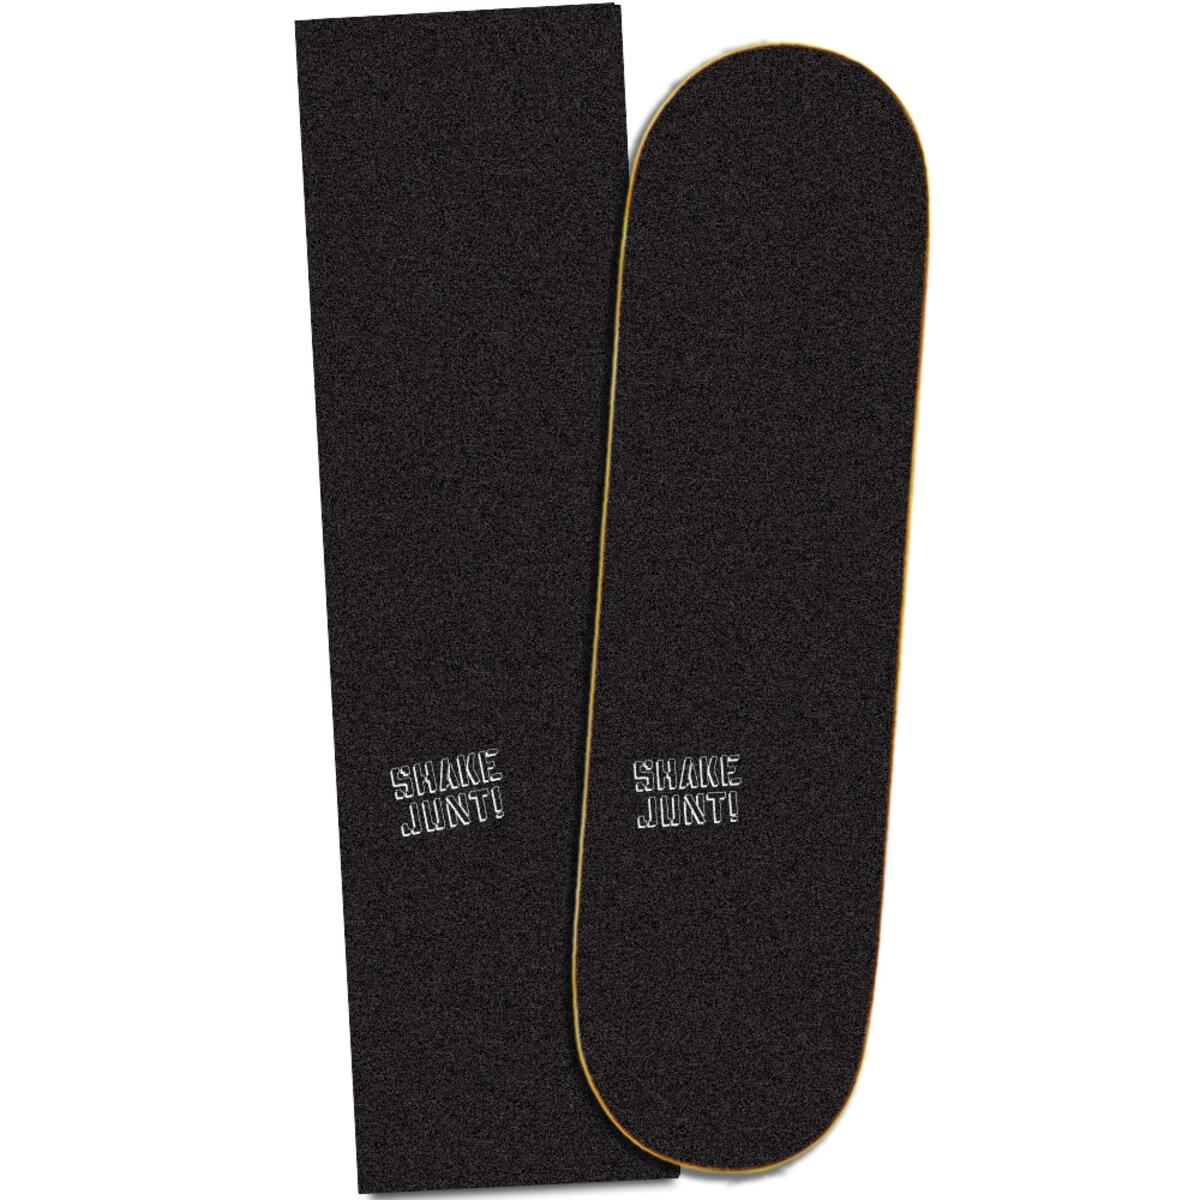 9" X SHAKE Skateboard Grip Tape- Low Key, BLK / WHT Deckadence Board Shoppe